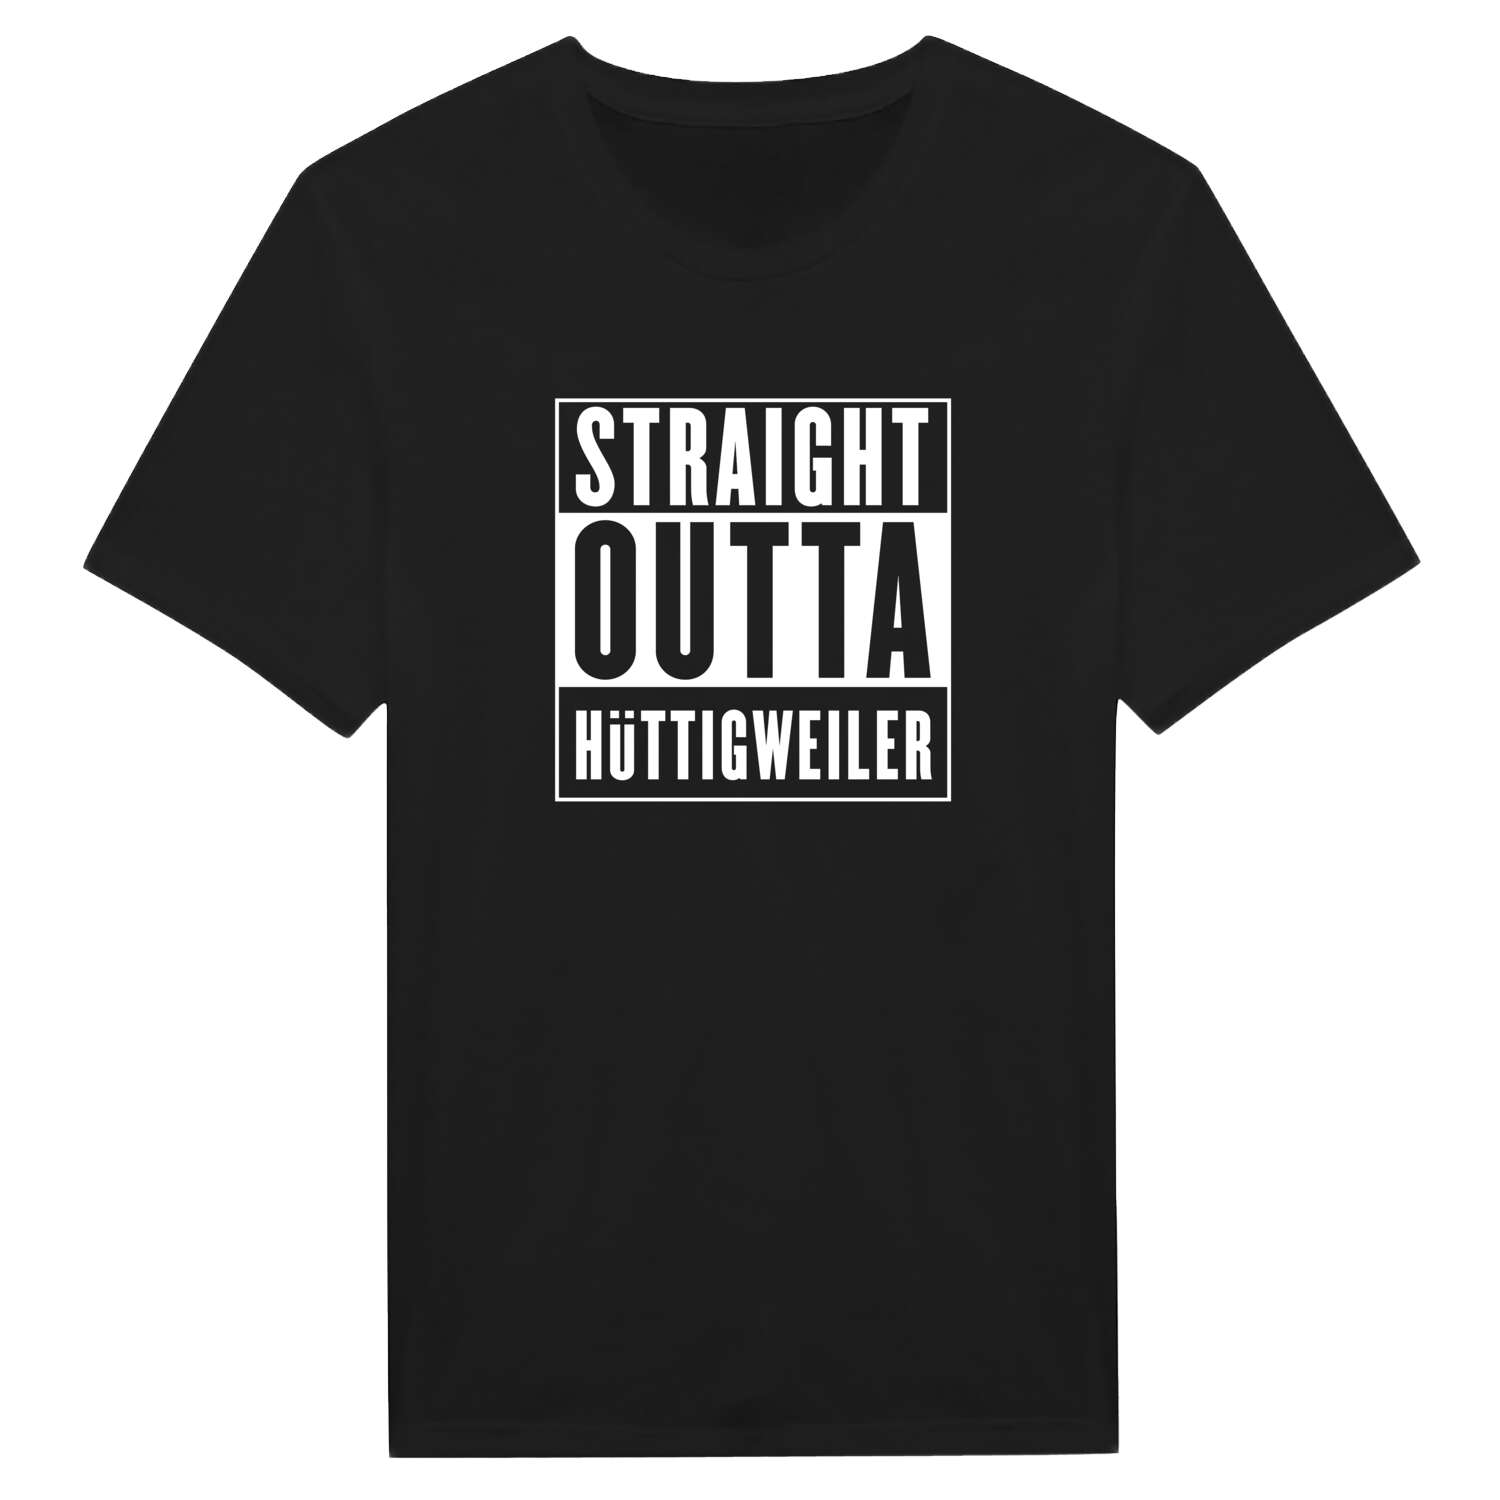 Hüttigweiler T-Shirt »Straight Outta«